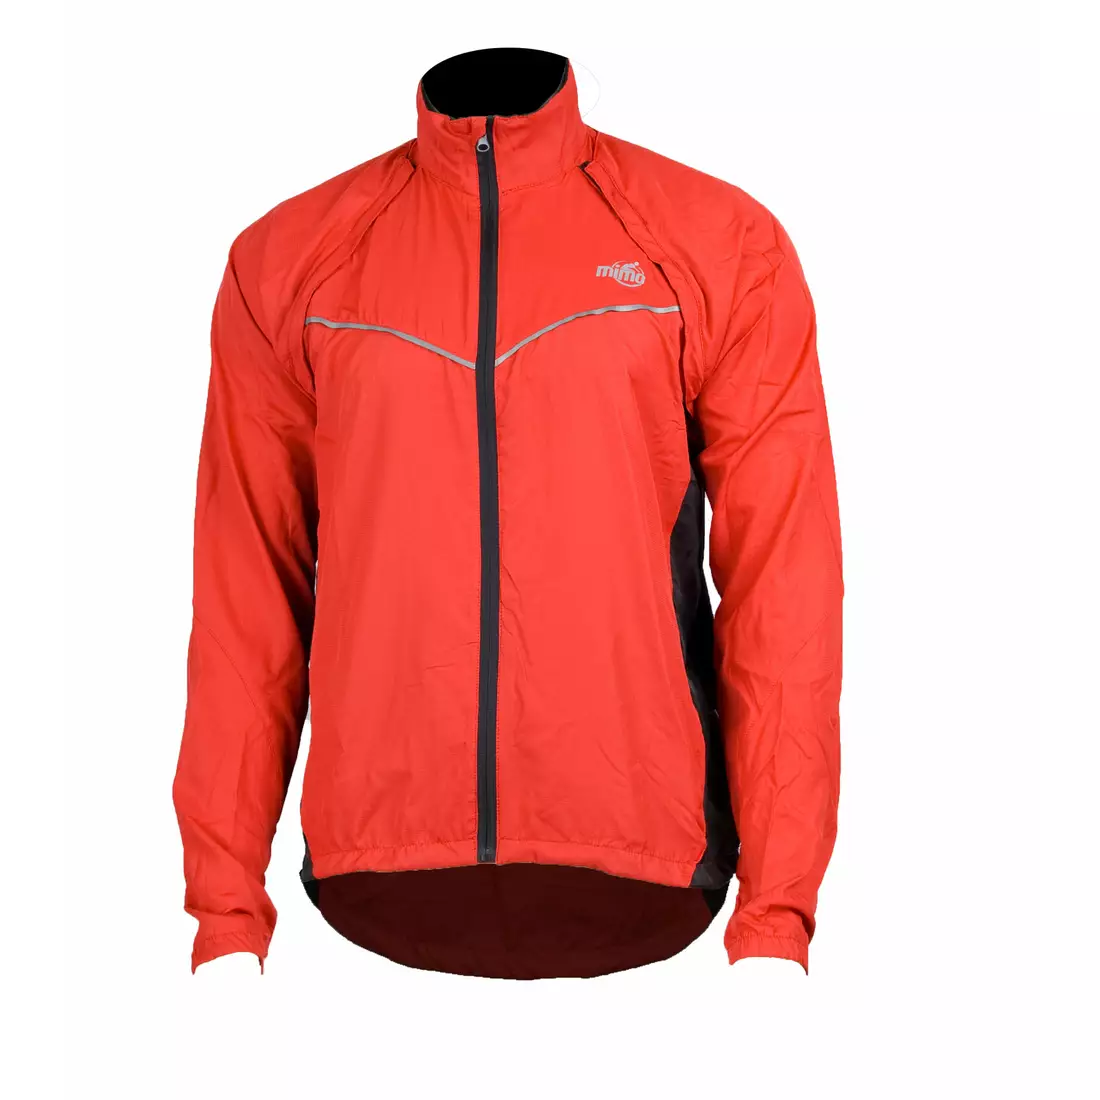 MikeSPORT SWORD - kerékpáros kabát, levehető ujjú, piros